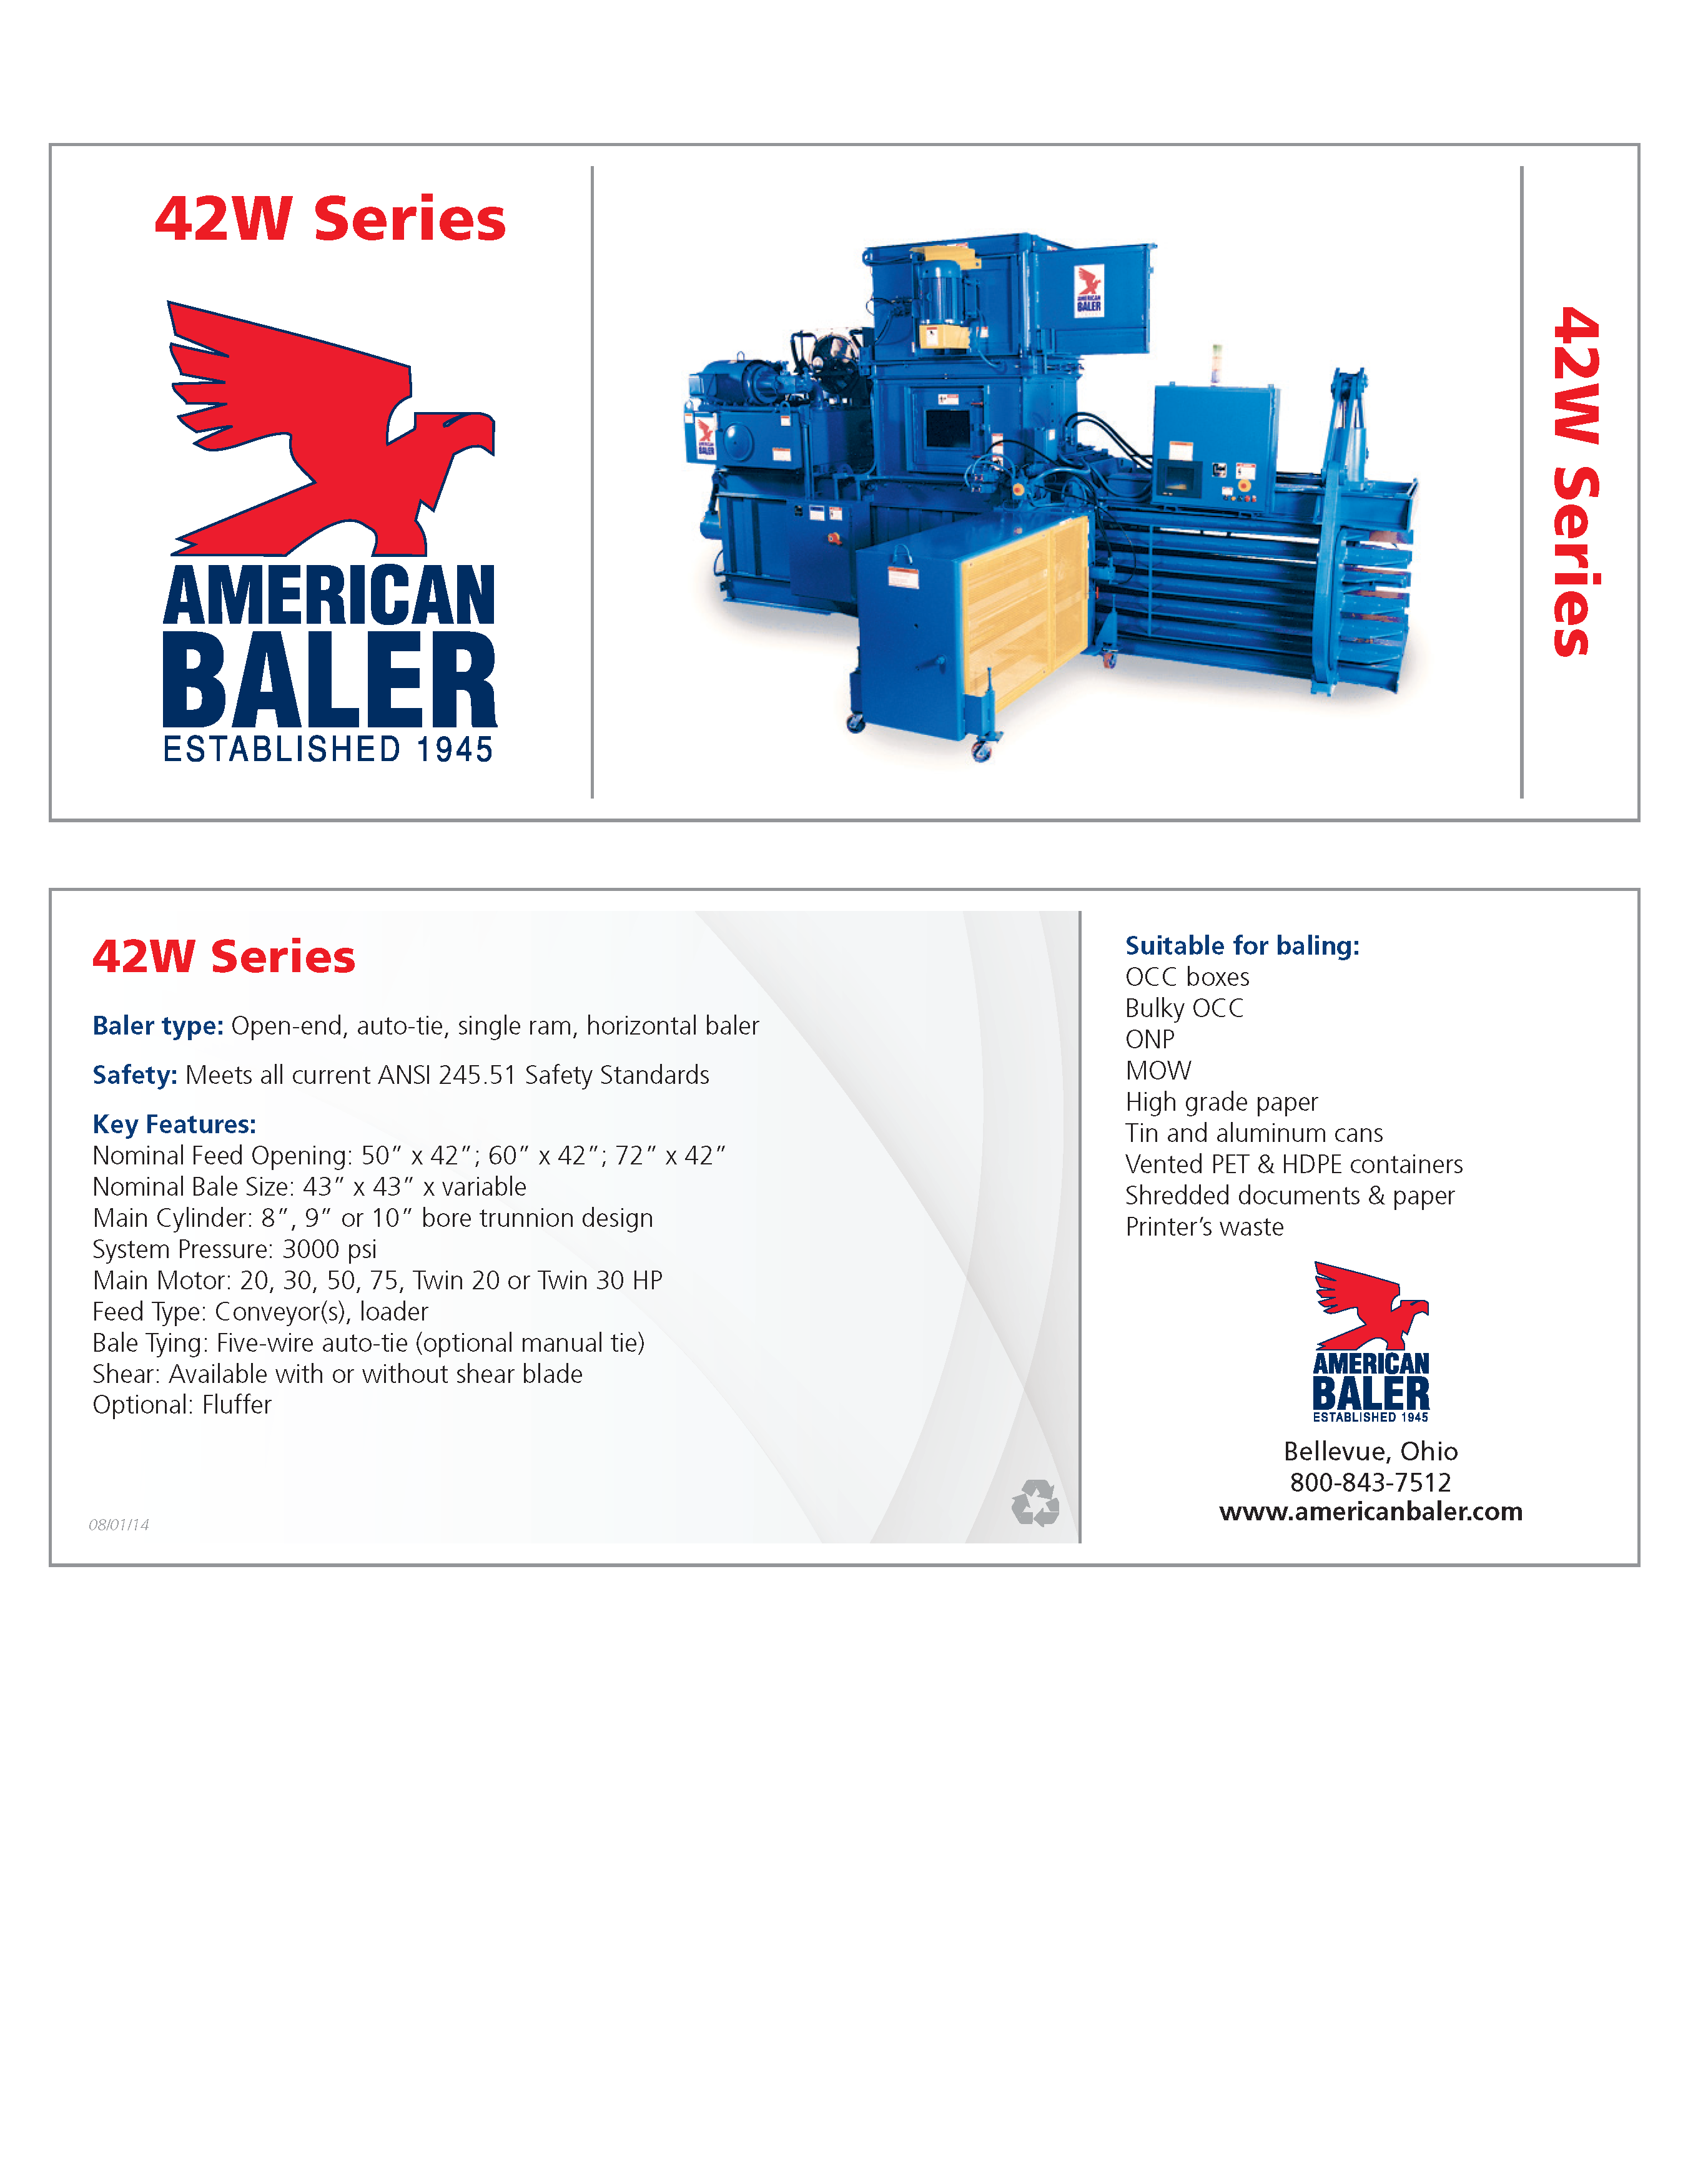 Conozca más acerca de las compactadoras de la serie 42WS en el folleto de American Baler.